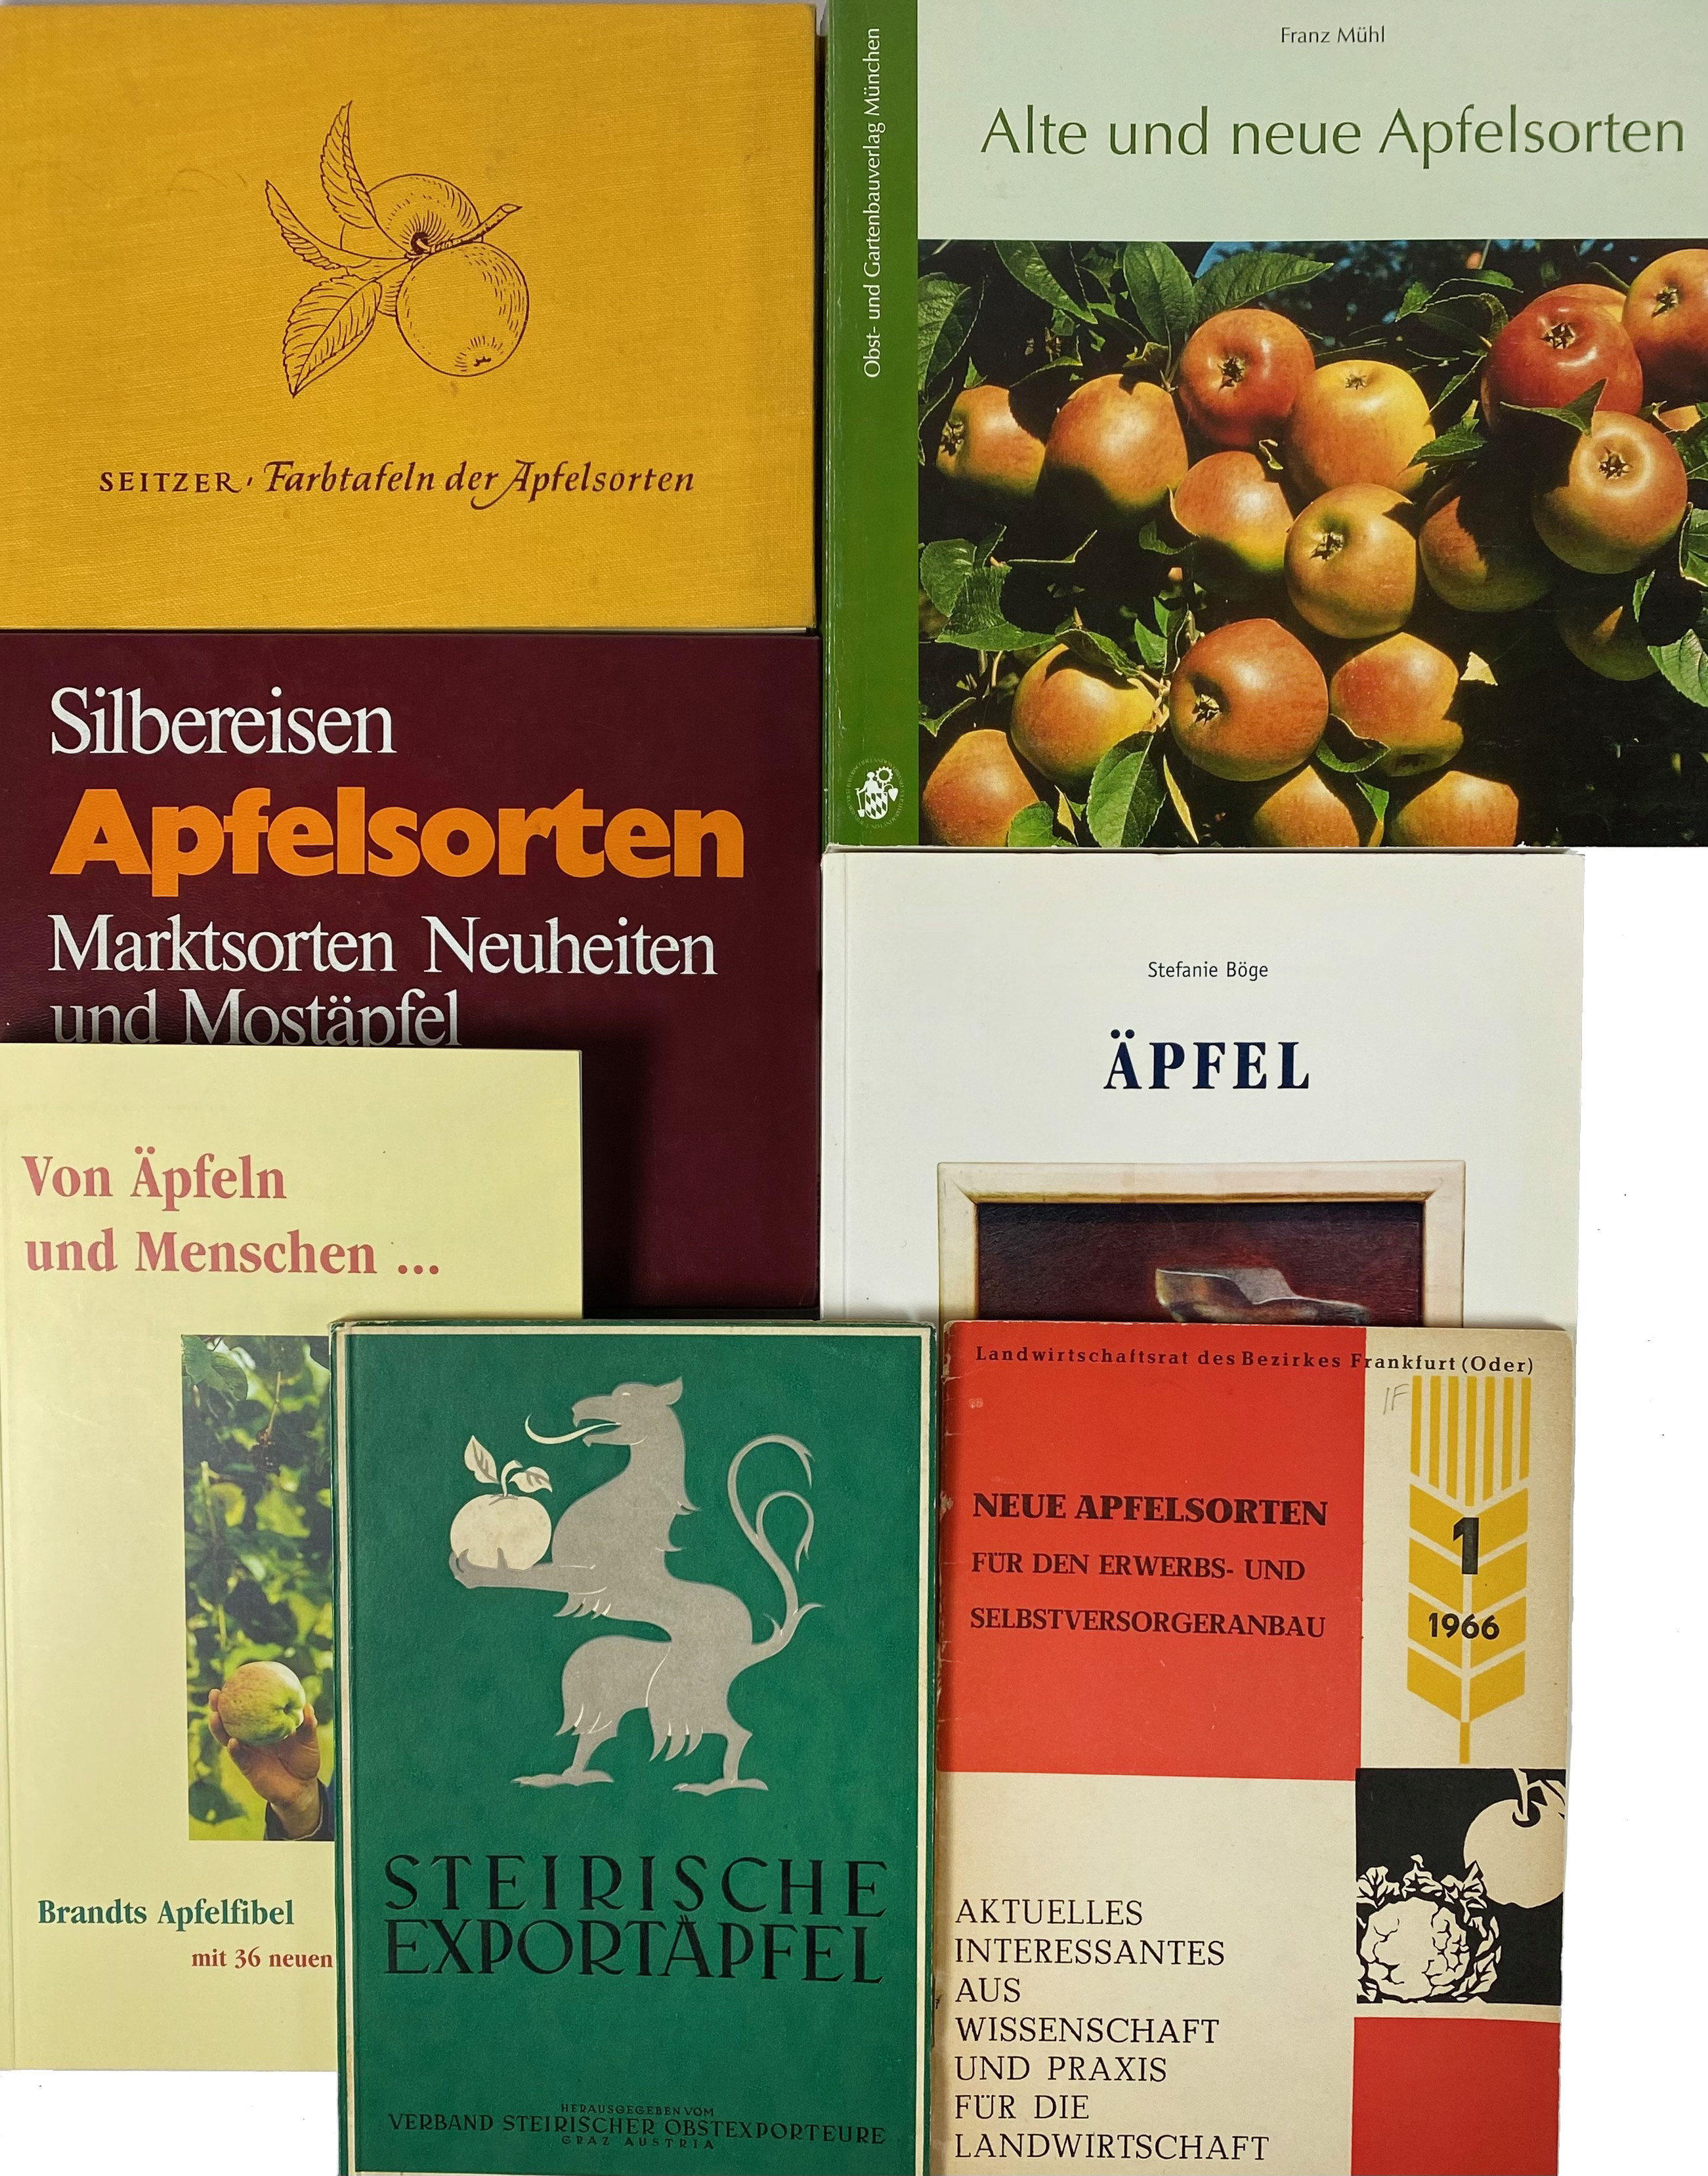 APPLES -- LOEWEL, E.L. & S. LABUS. Deutsche Äpfel, die Handelssorten. Bd. I: Niederelbe - Image 2 of 2